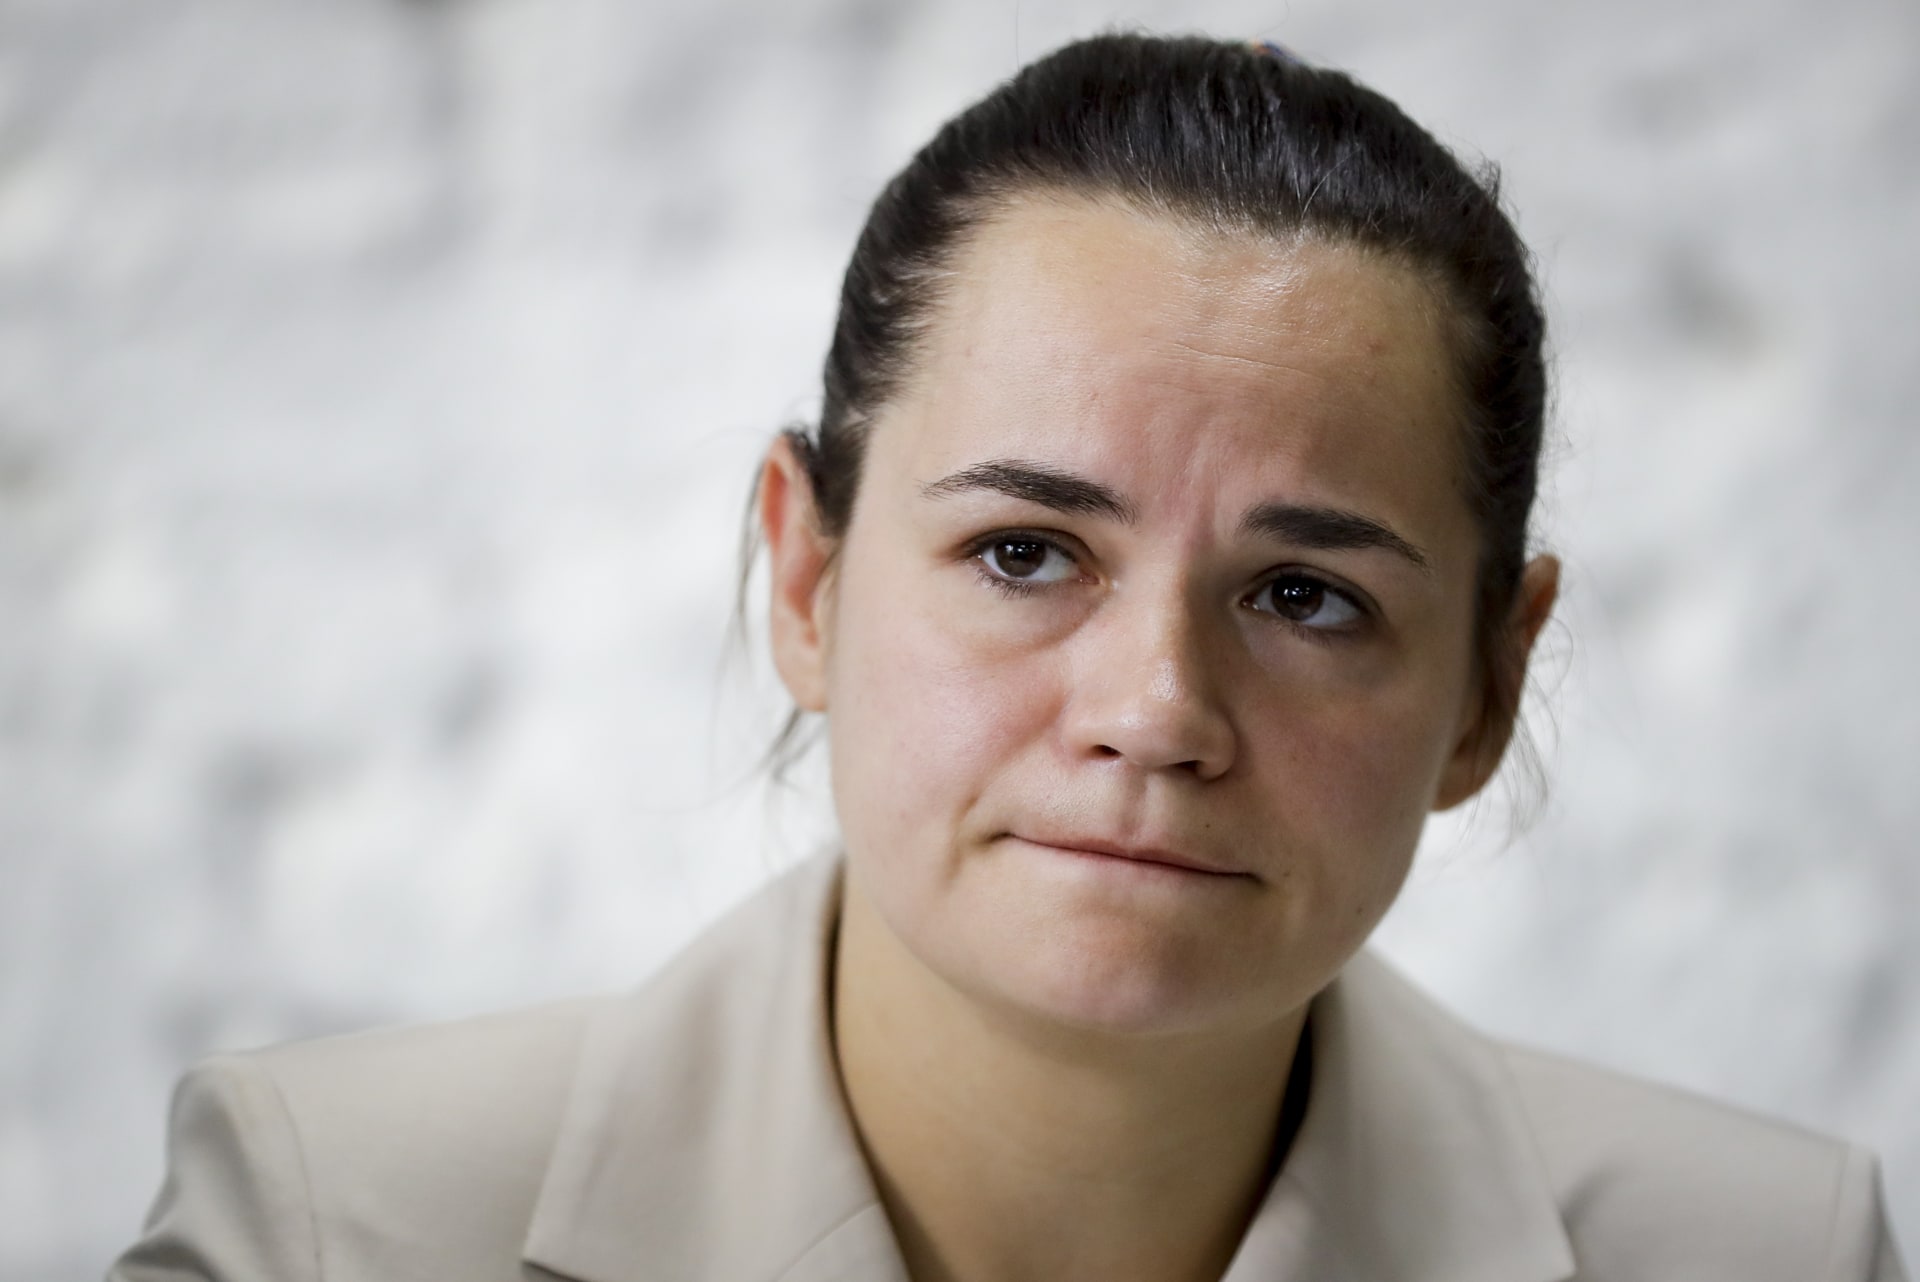 Svjatlana Cichanouská odjela ze země. Údajně měla být sedm hodin zadržována.